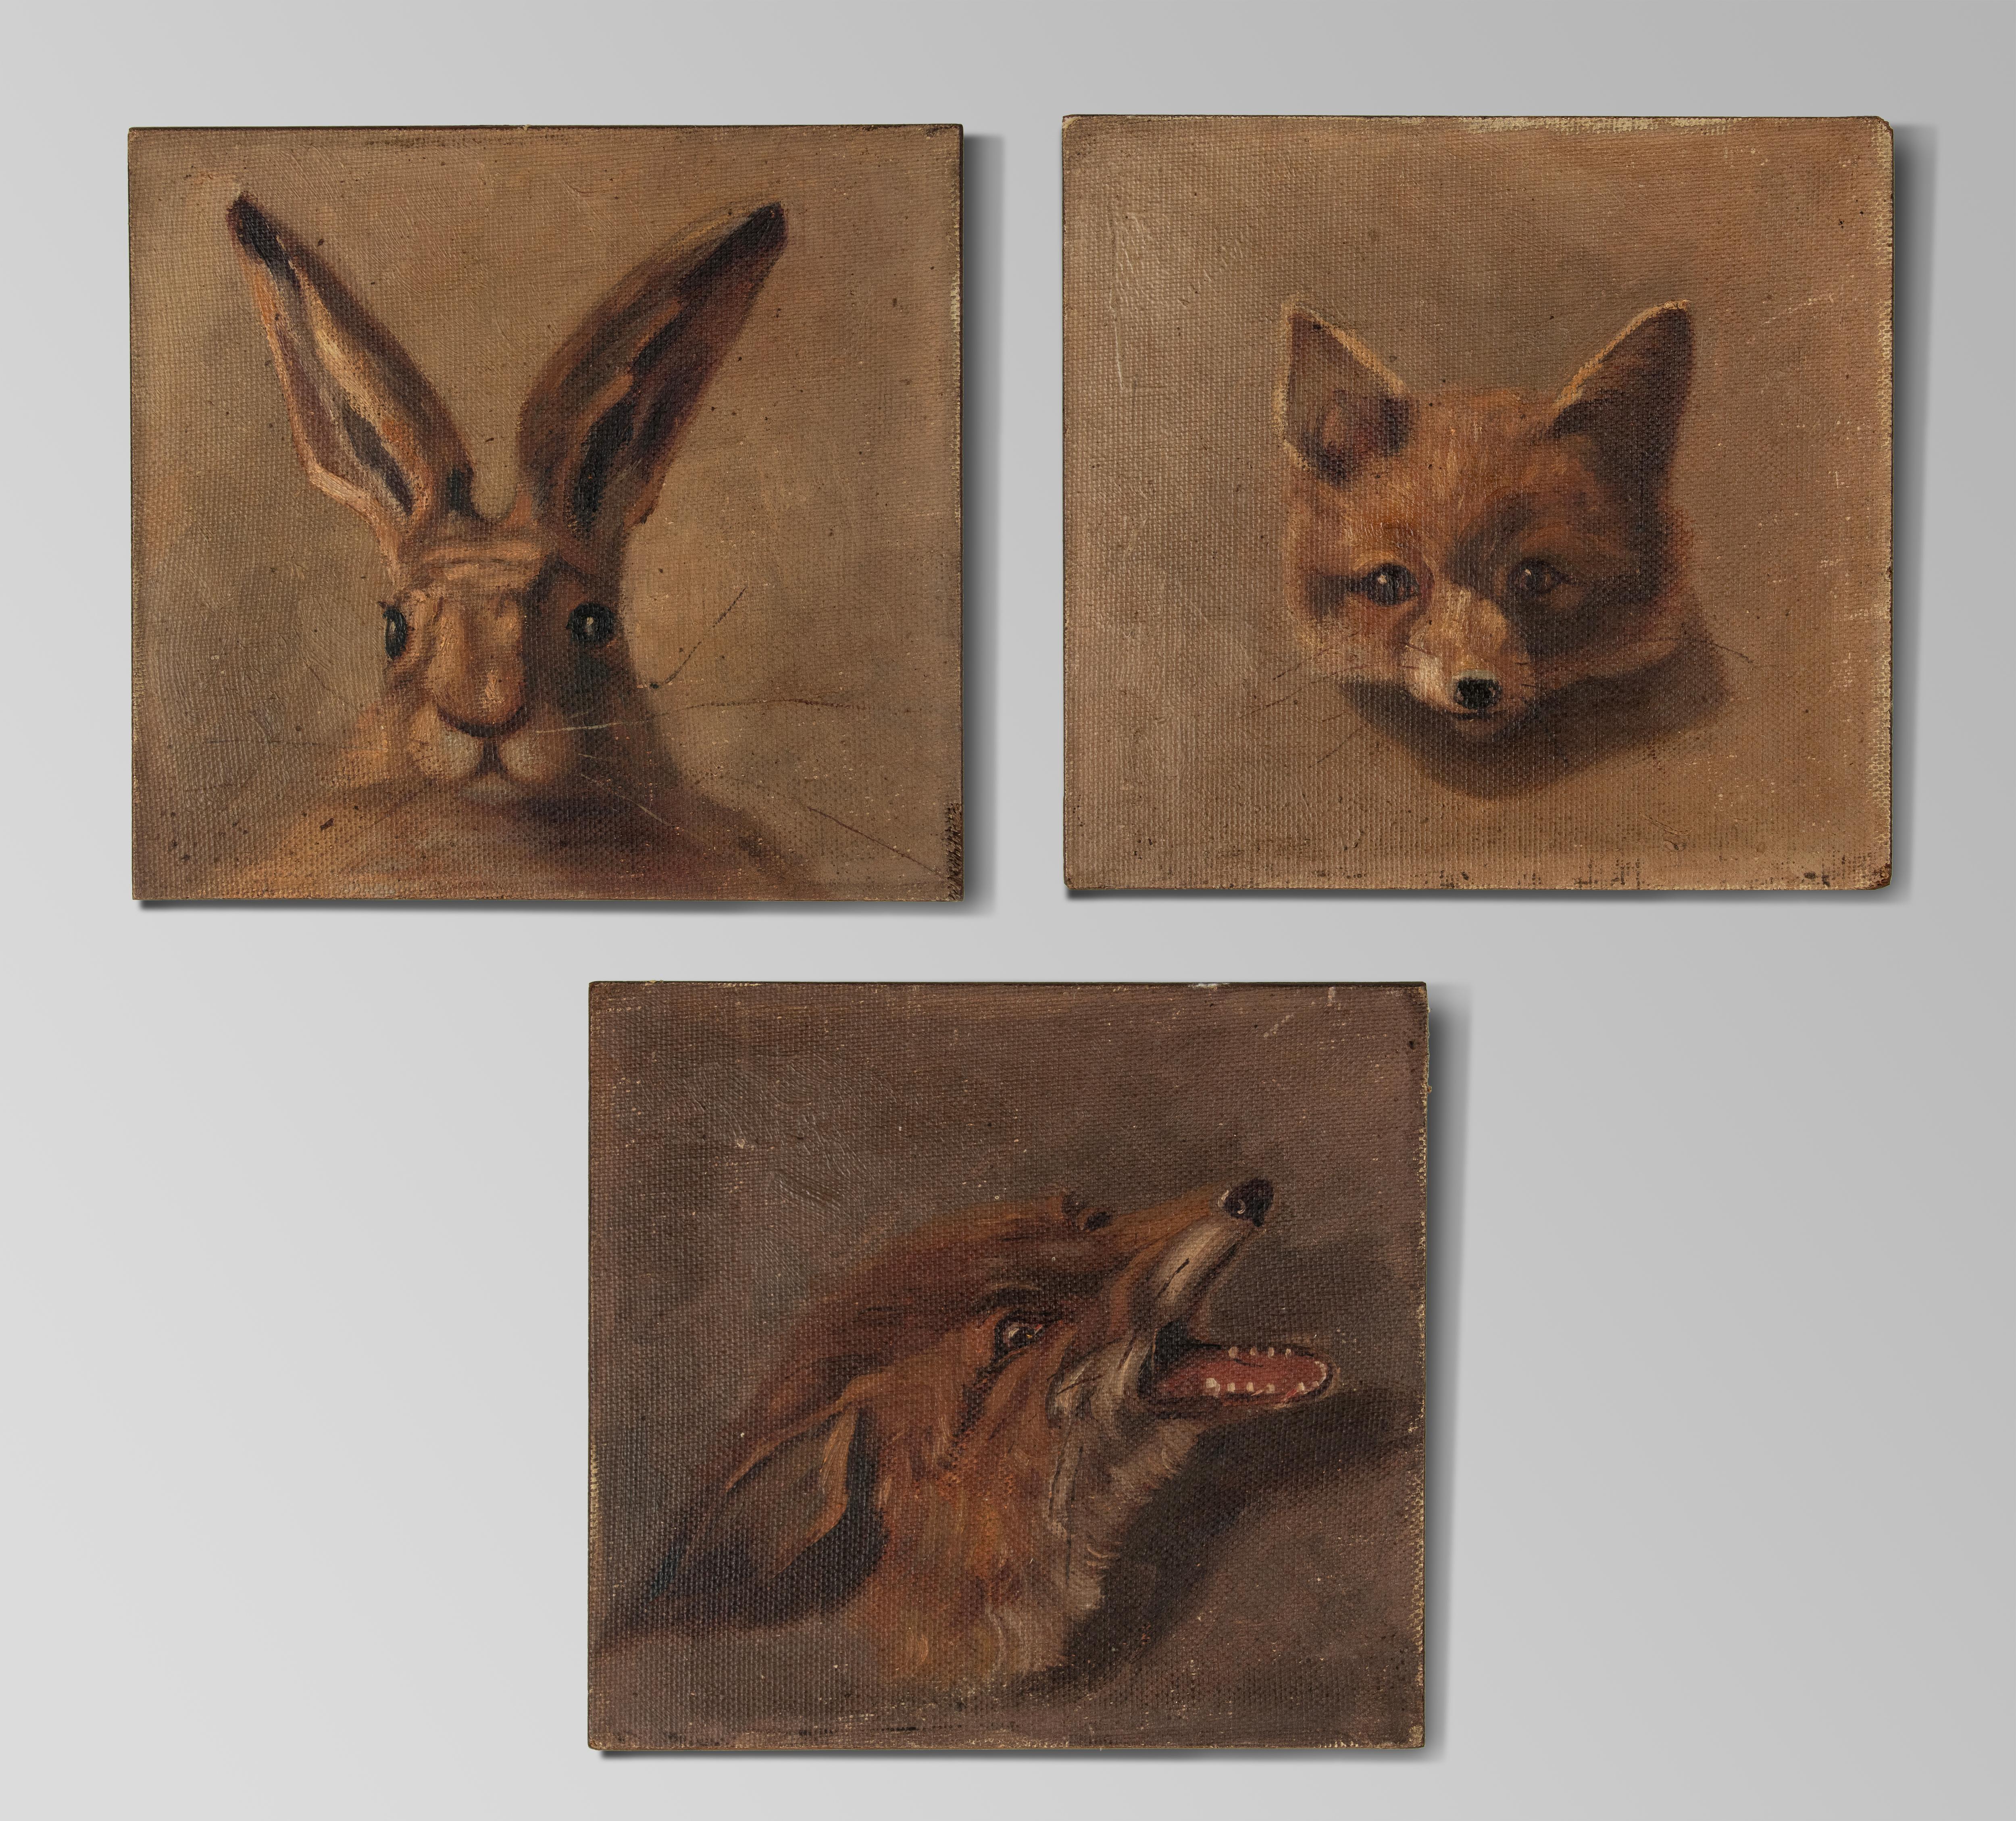 Un ensemble de trois peintures à l'huile. Portrait d'un lièvre, d'un renard et d'un jeune renard. Peint sur toile, la toile a ensuite été placée sur un panneau en chêne. Les tableaux ne sont pas signés, il s'agit probablement d'études de l'artiste.